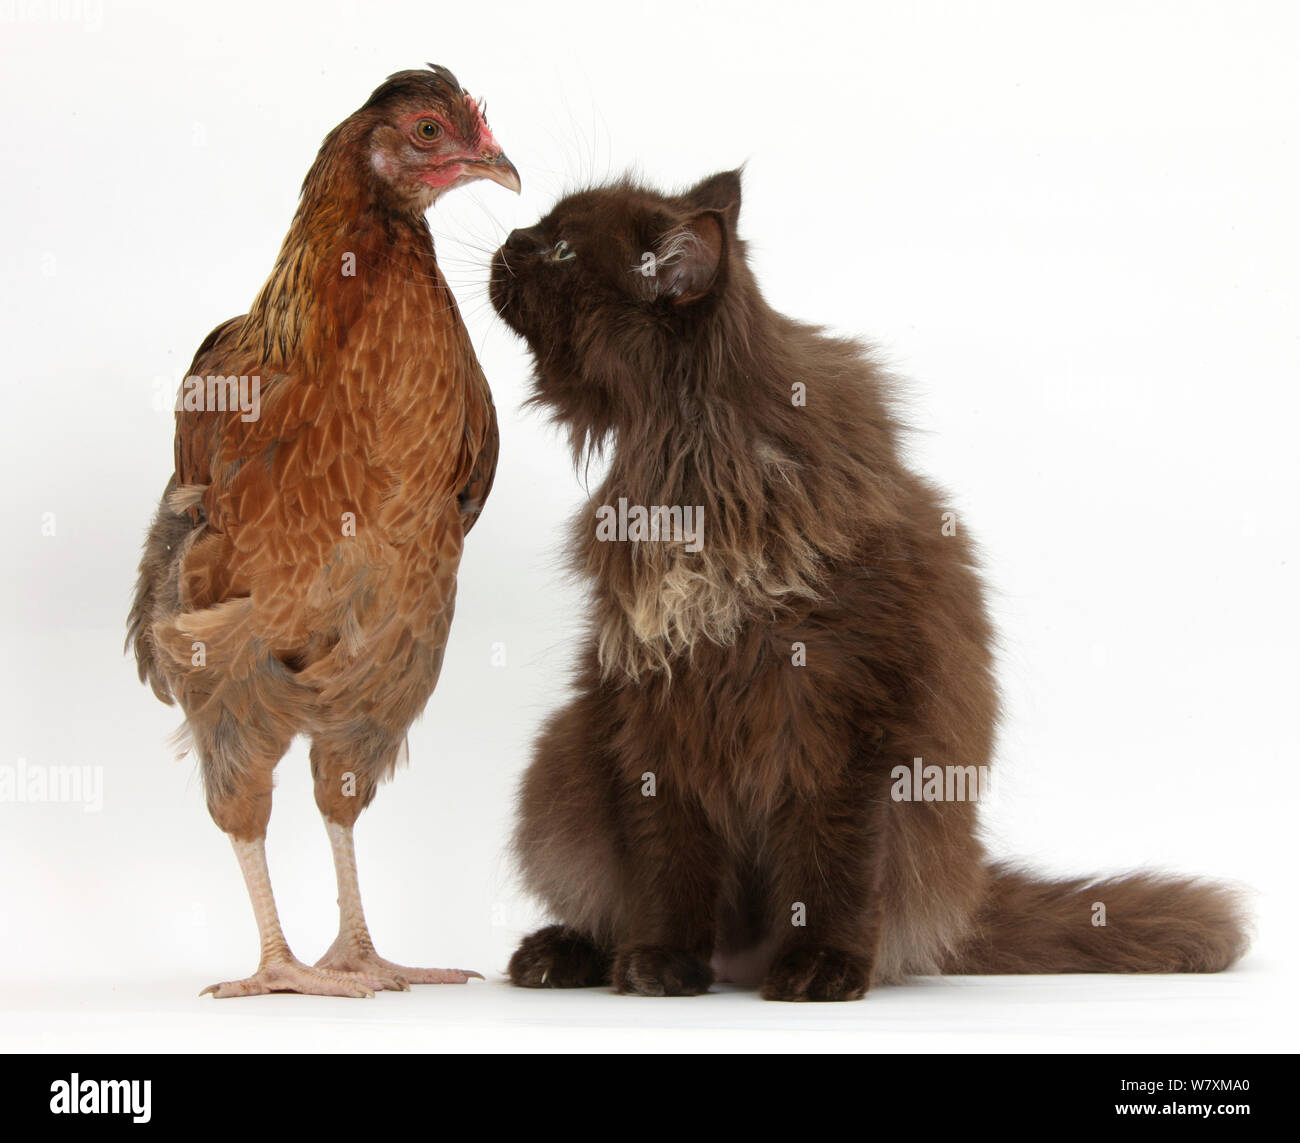 Chocolate cat sitting next to chicken. Stock Photo